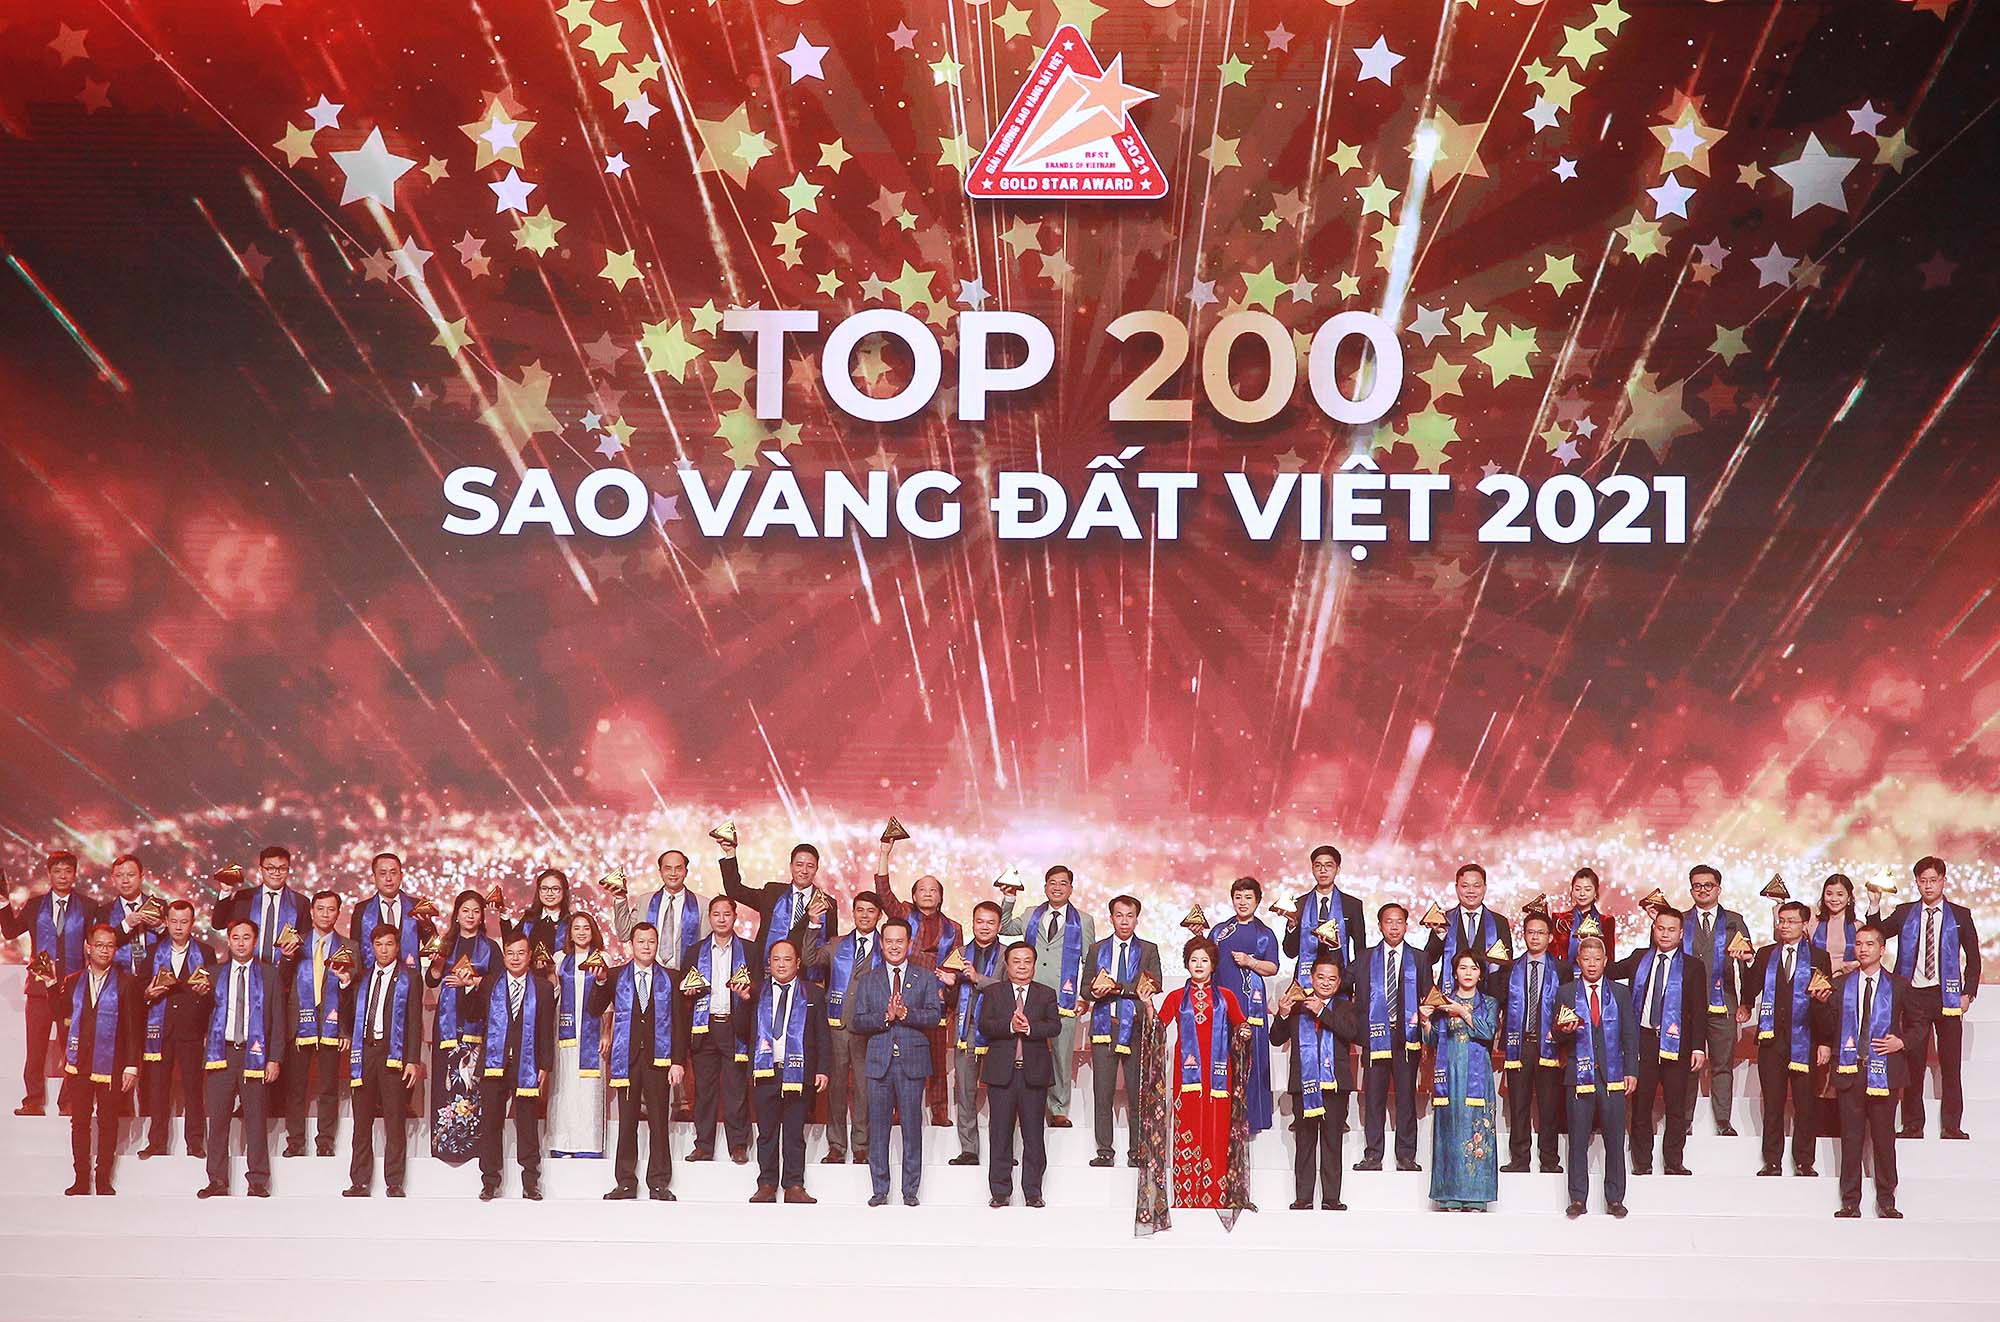 Top 200 Sao Vàng đất Việt